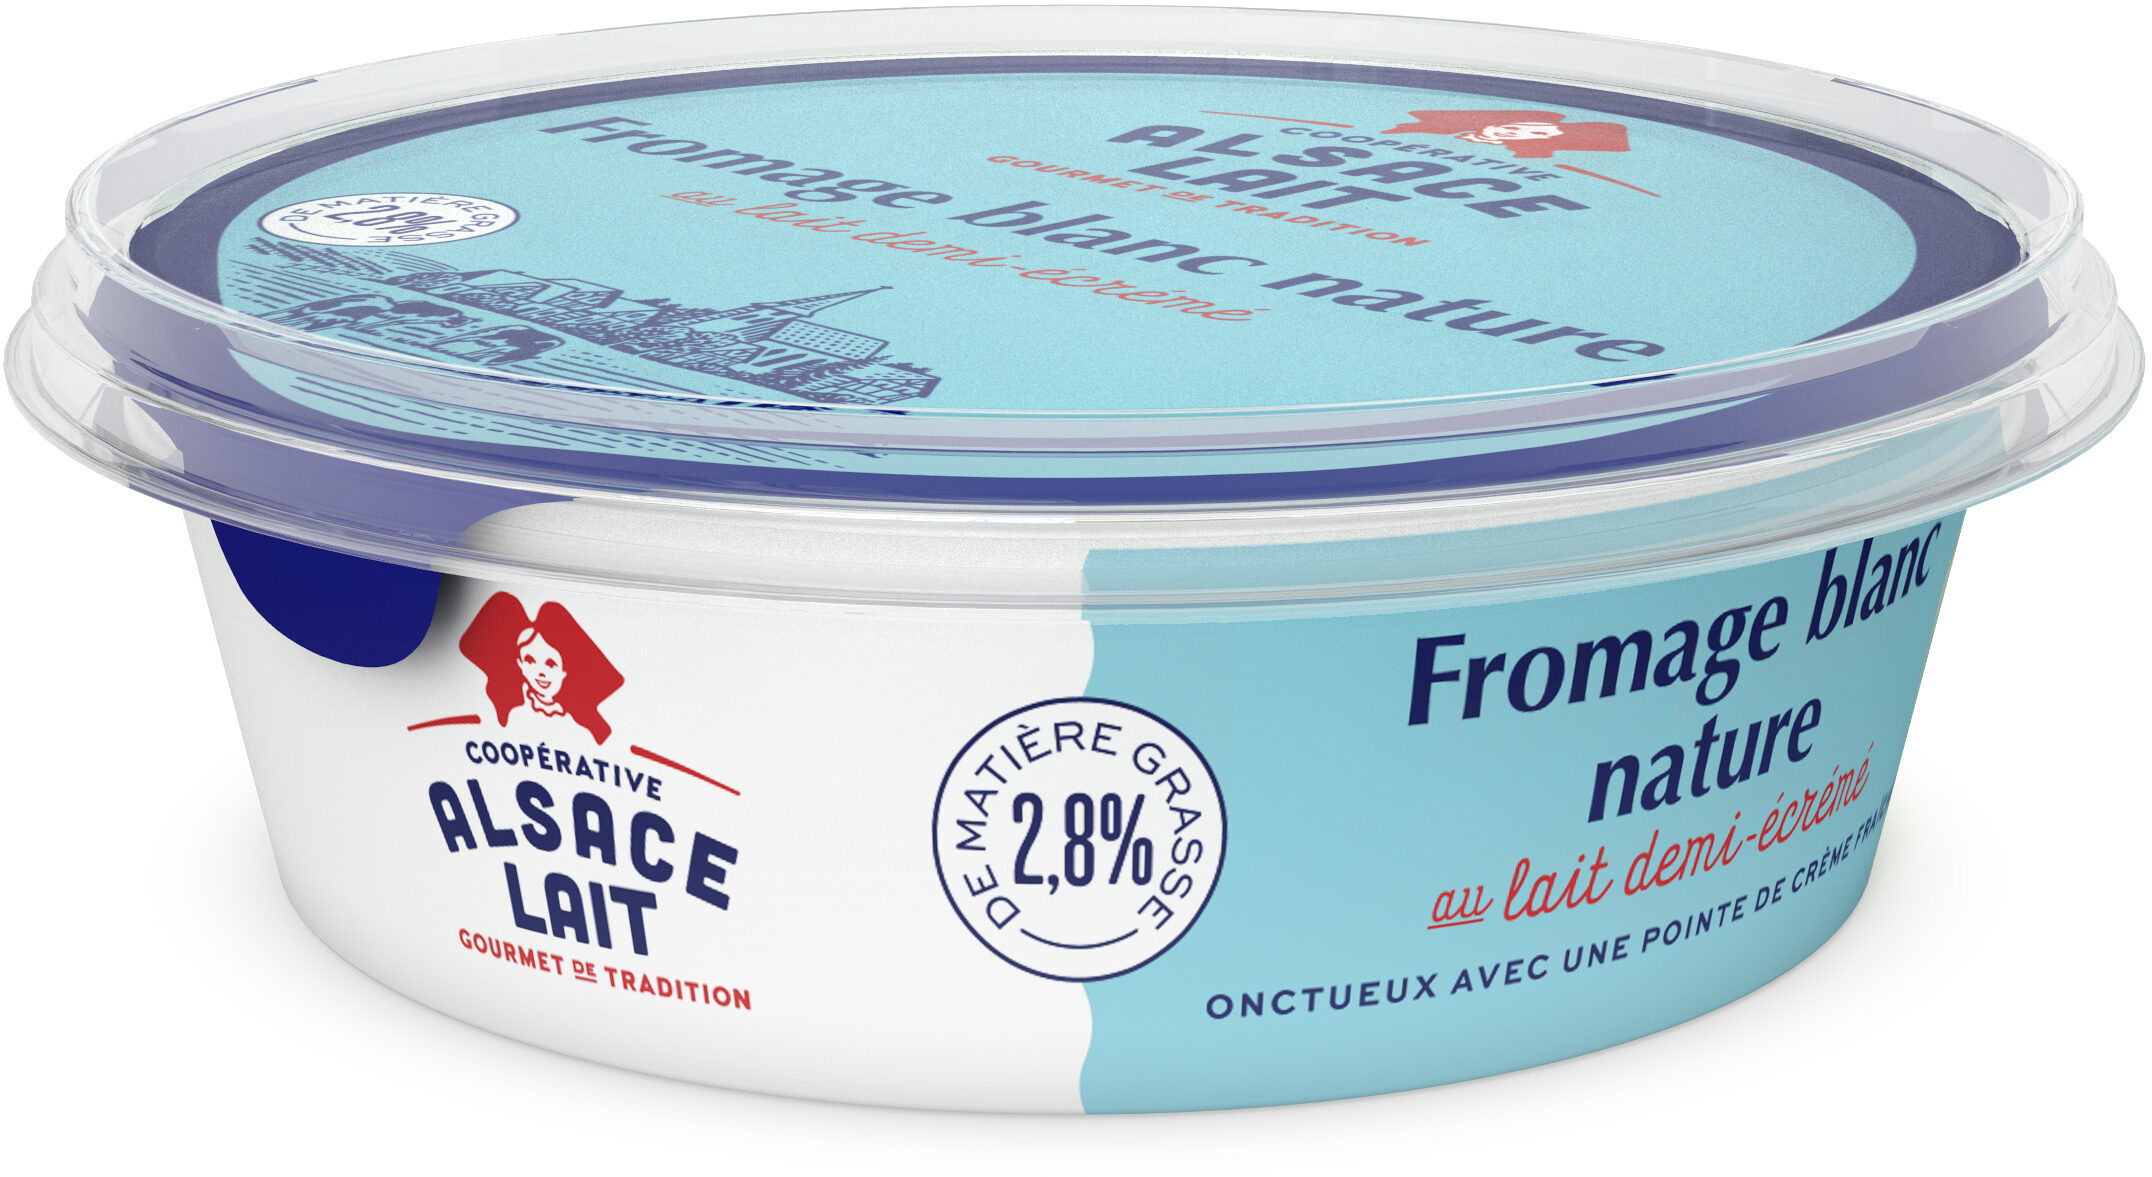 Fromage Blanc Nature au lait demi-écrémé 2,8% - Product - fr